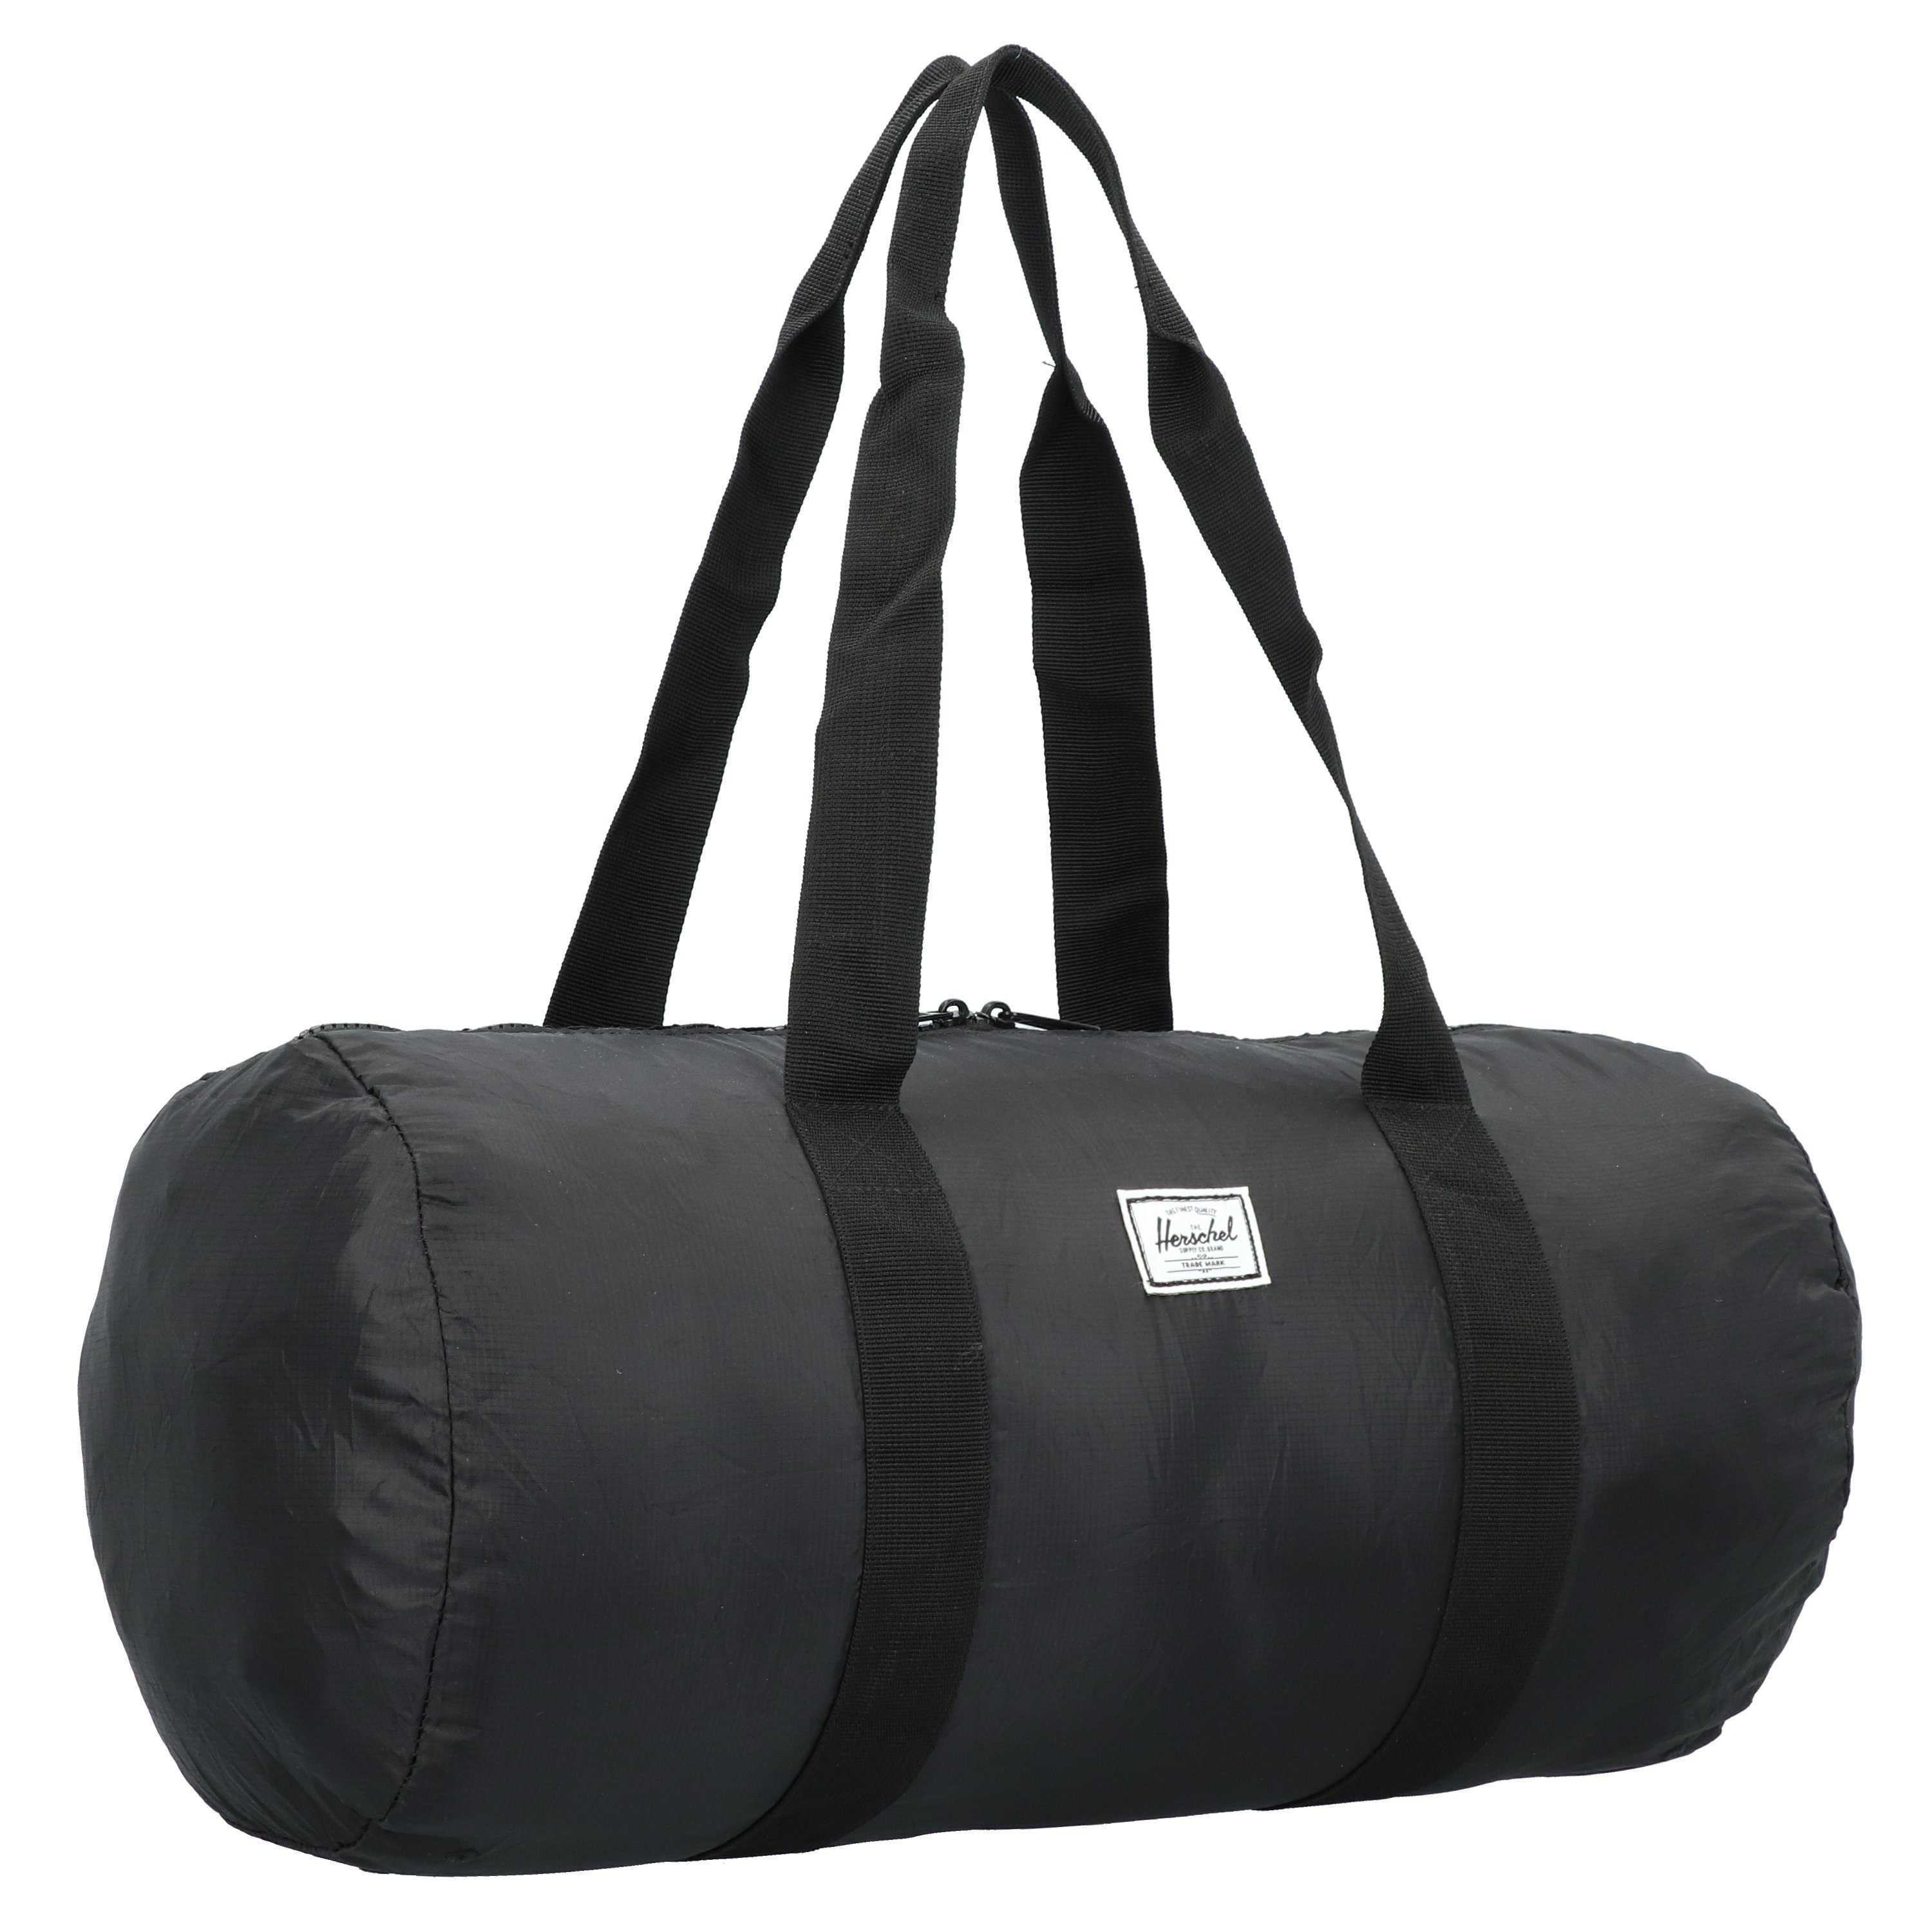 Damen Reisetaschen Herschel Reisetasche Packable, Polyester